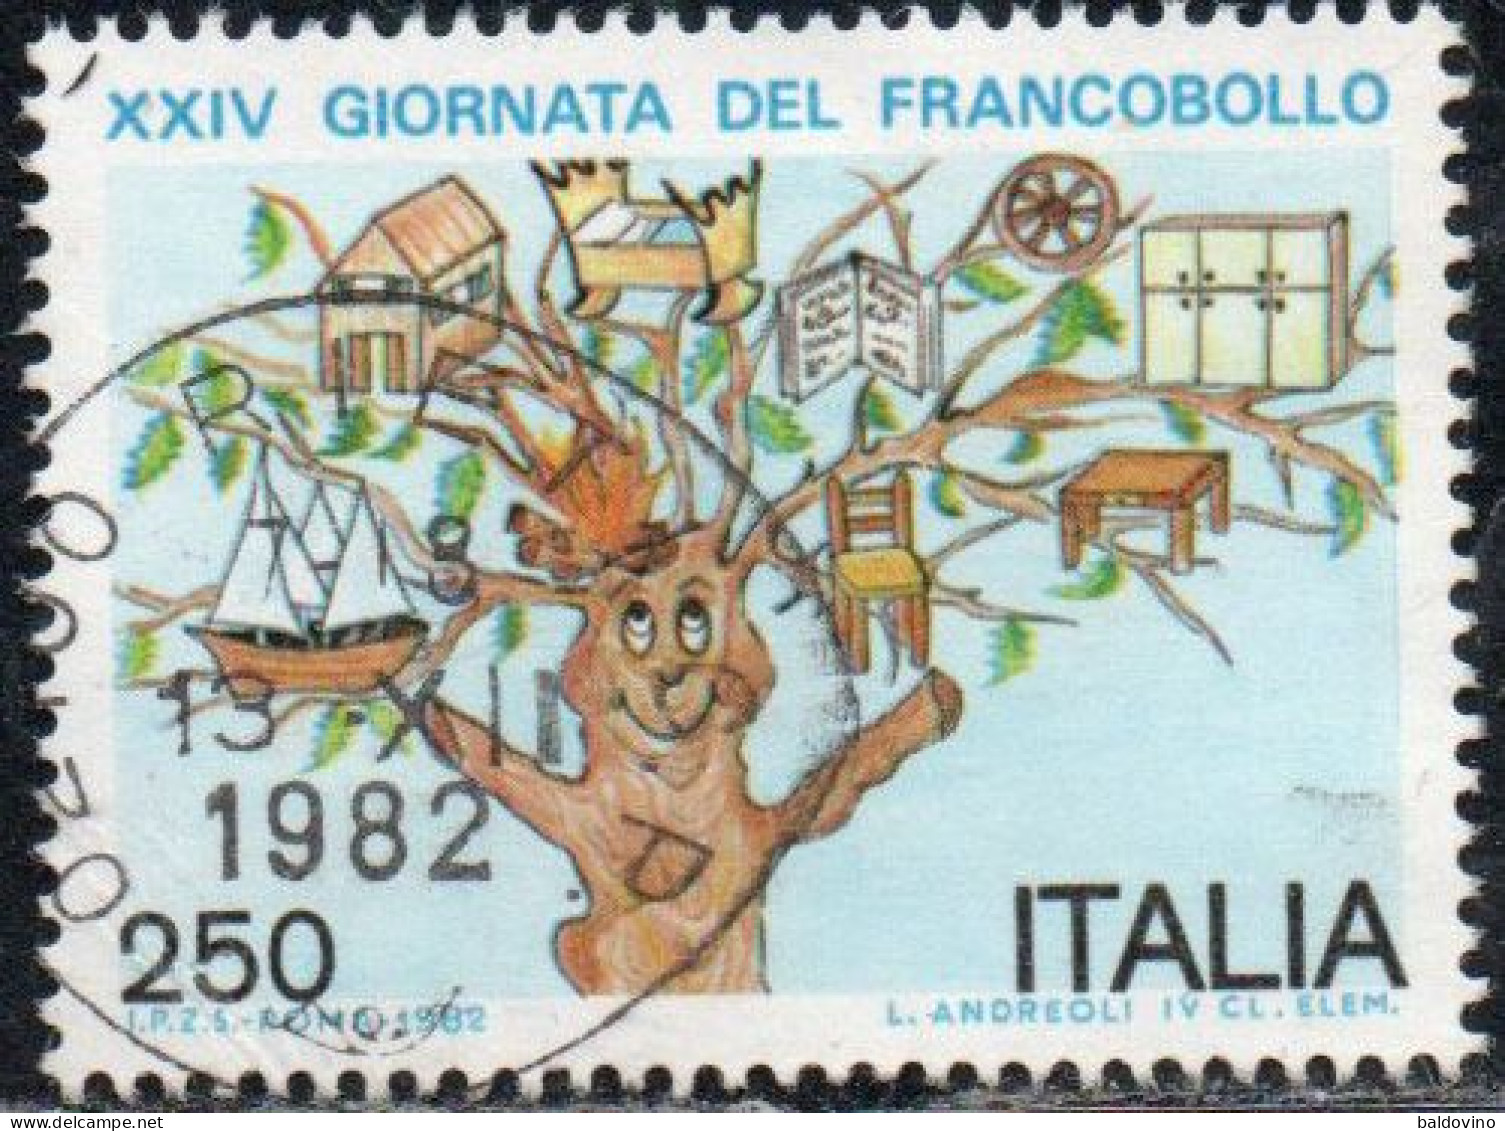 Italia 1982 Lotto 10 valori